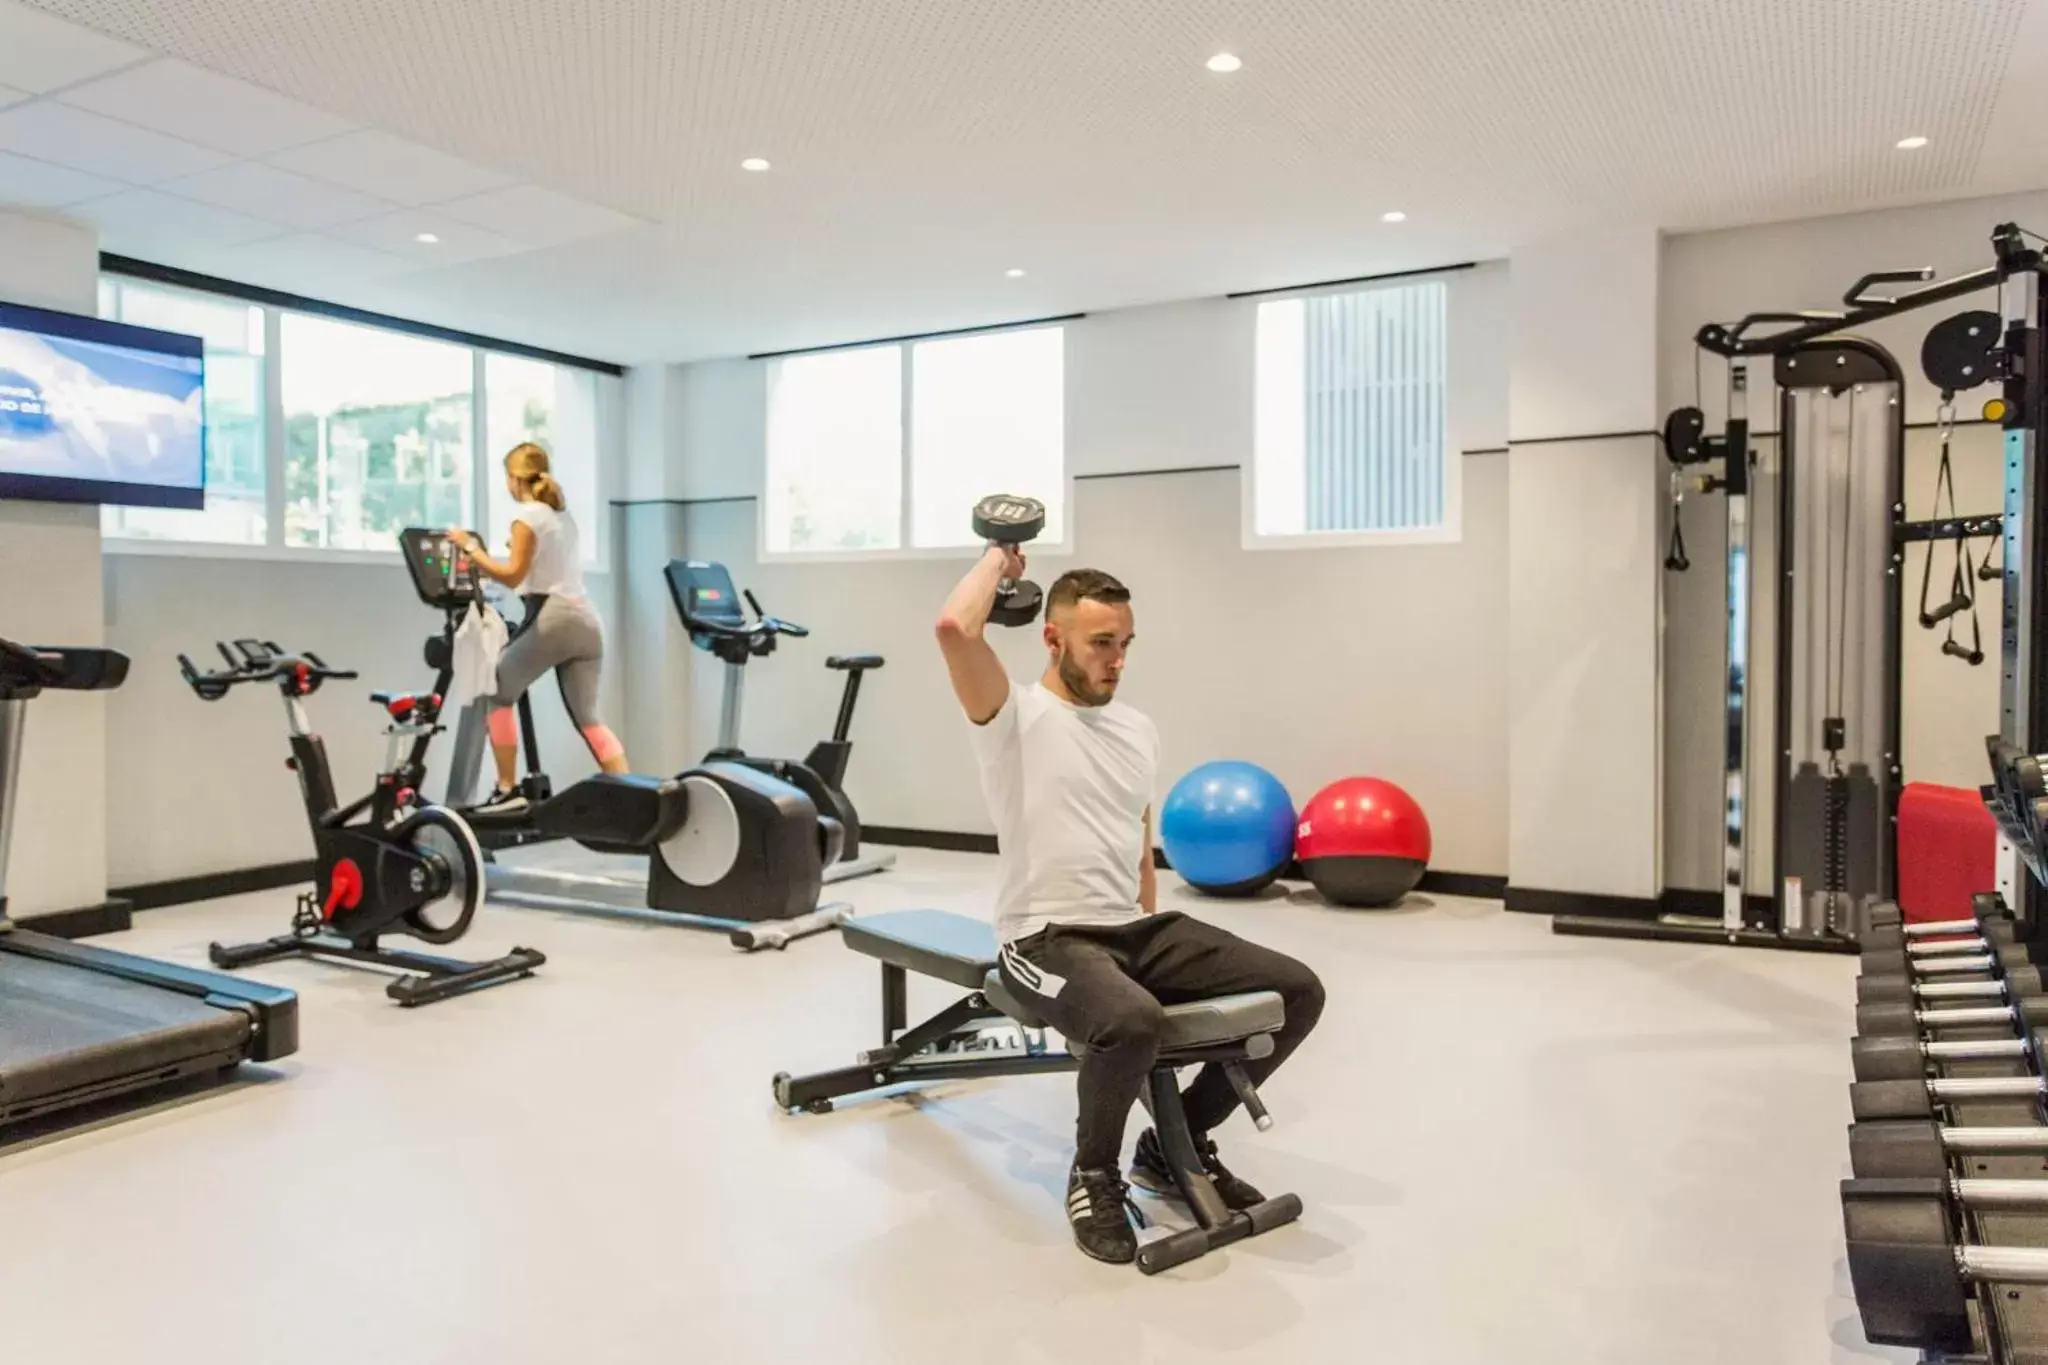 Fitness centre/facilities, Fitness Center/Facilities in Novotel Campo De Las Naciones